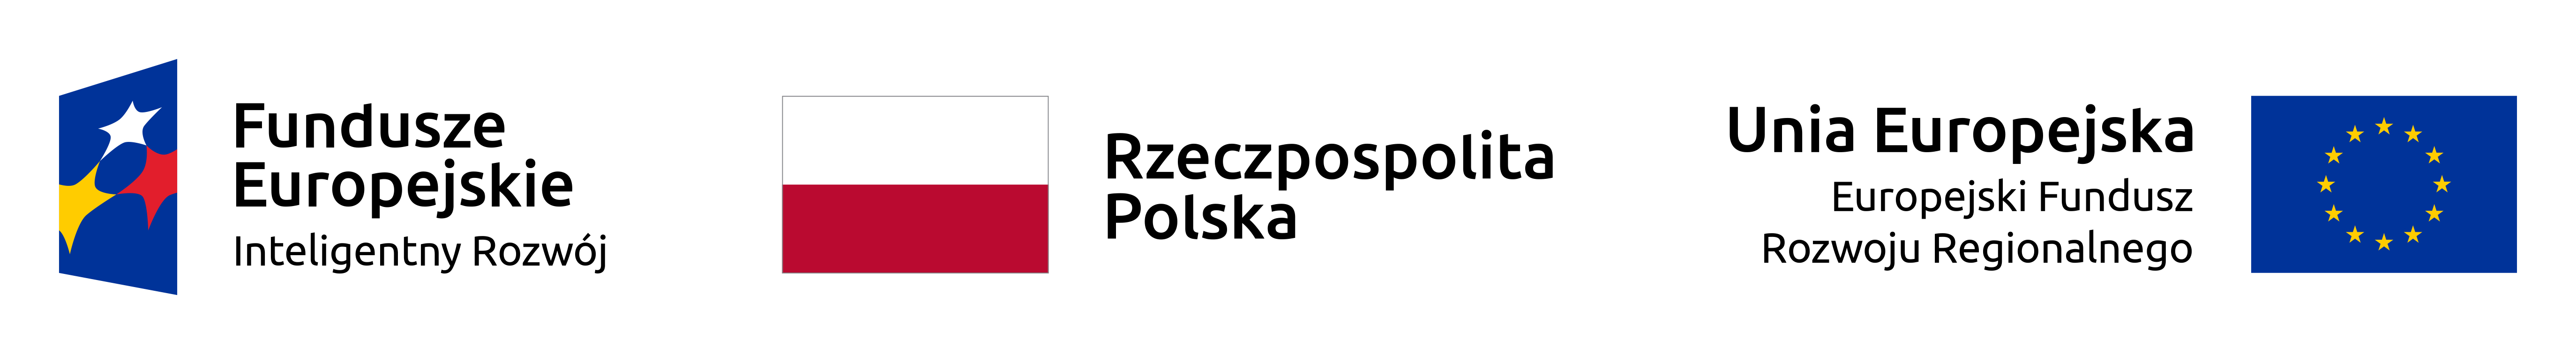 logo funduszy europejskich, flaga polski i logo unii europejskiej